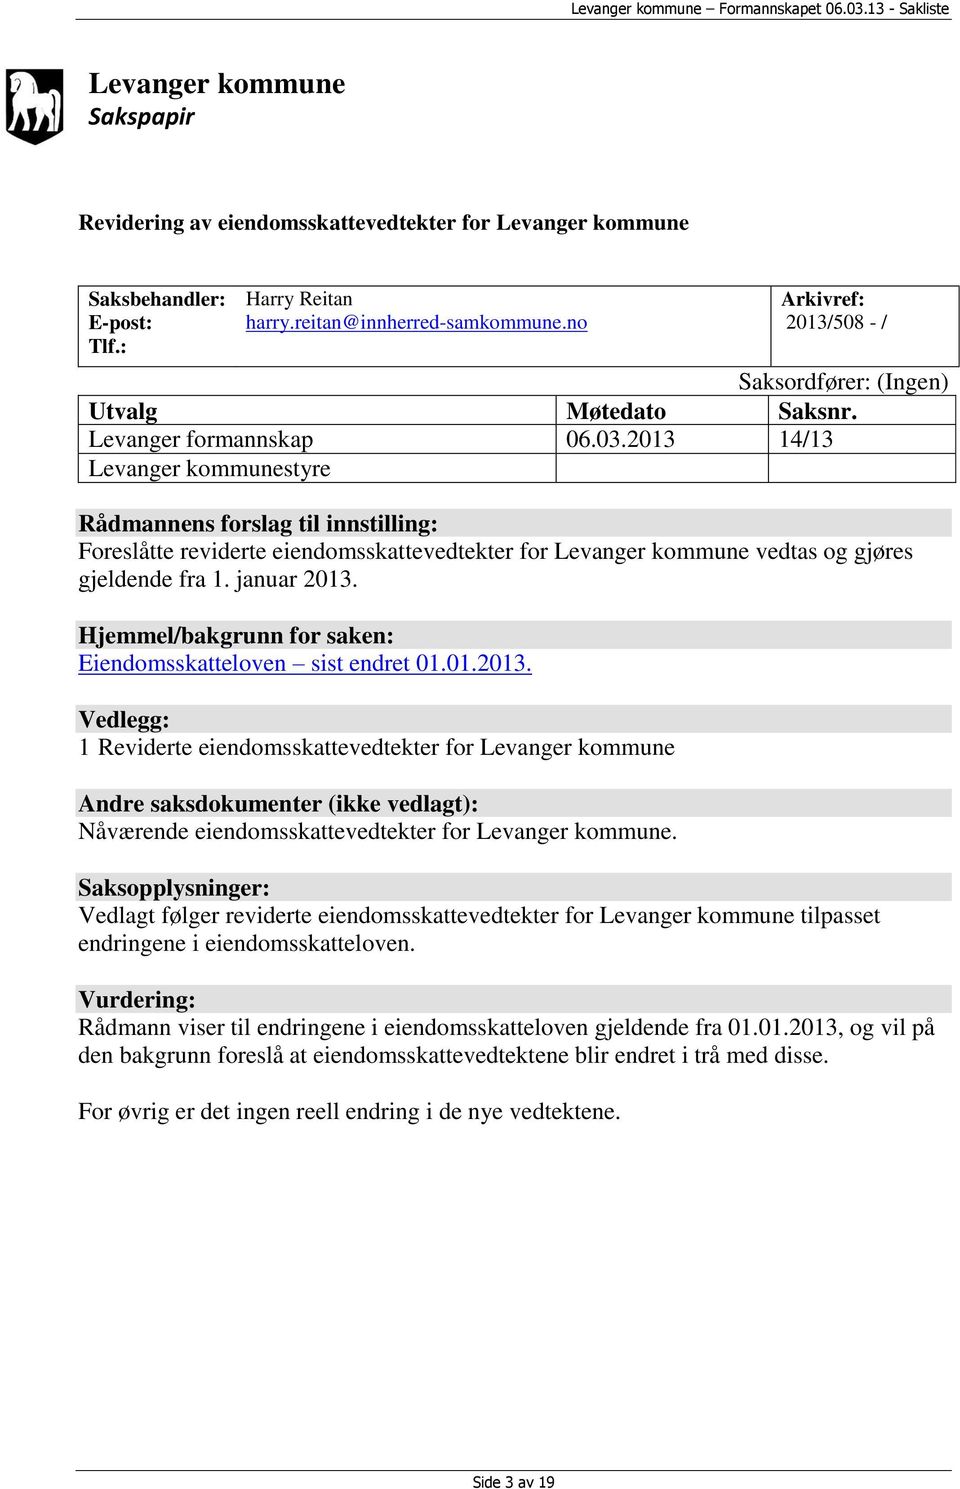 2013 14/13 Levanger kommunestyre Rådmannens forslag til innstilling: Foreslåtte reviderte eiendomsskattevedtekter for Levanger kommune vedtas og gjøres gjeldende fra 1. januar 2013.